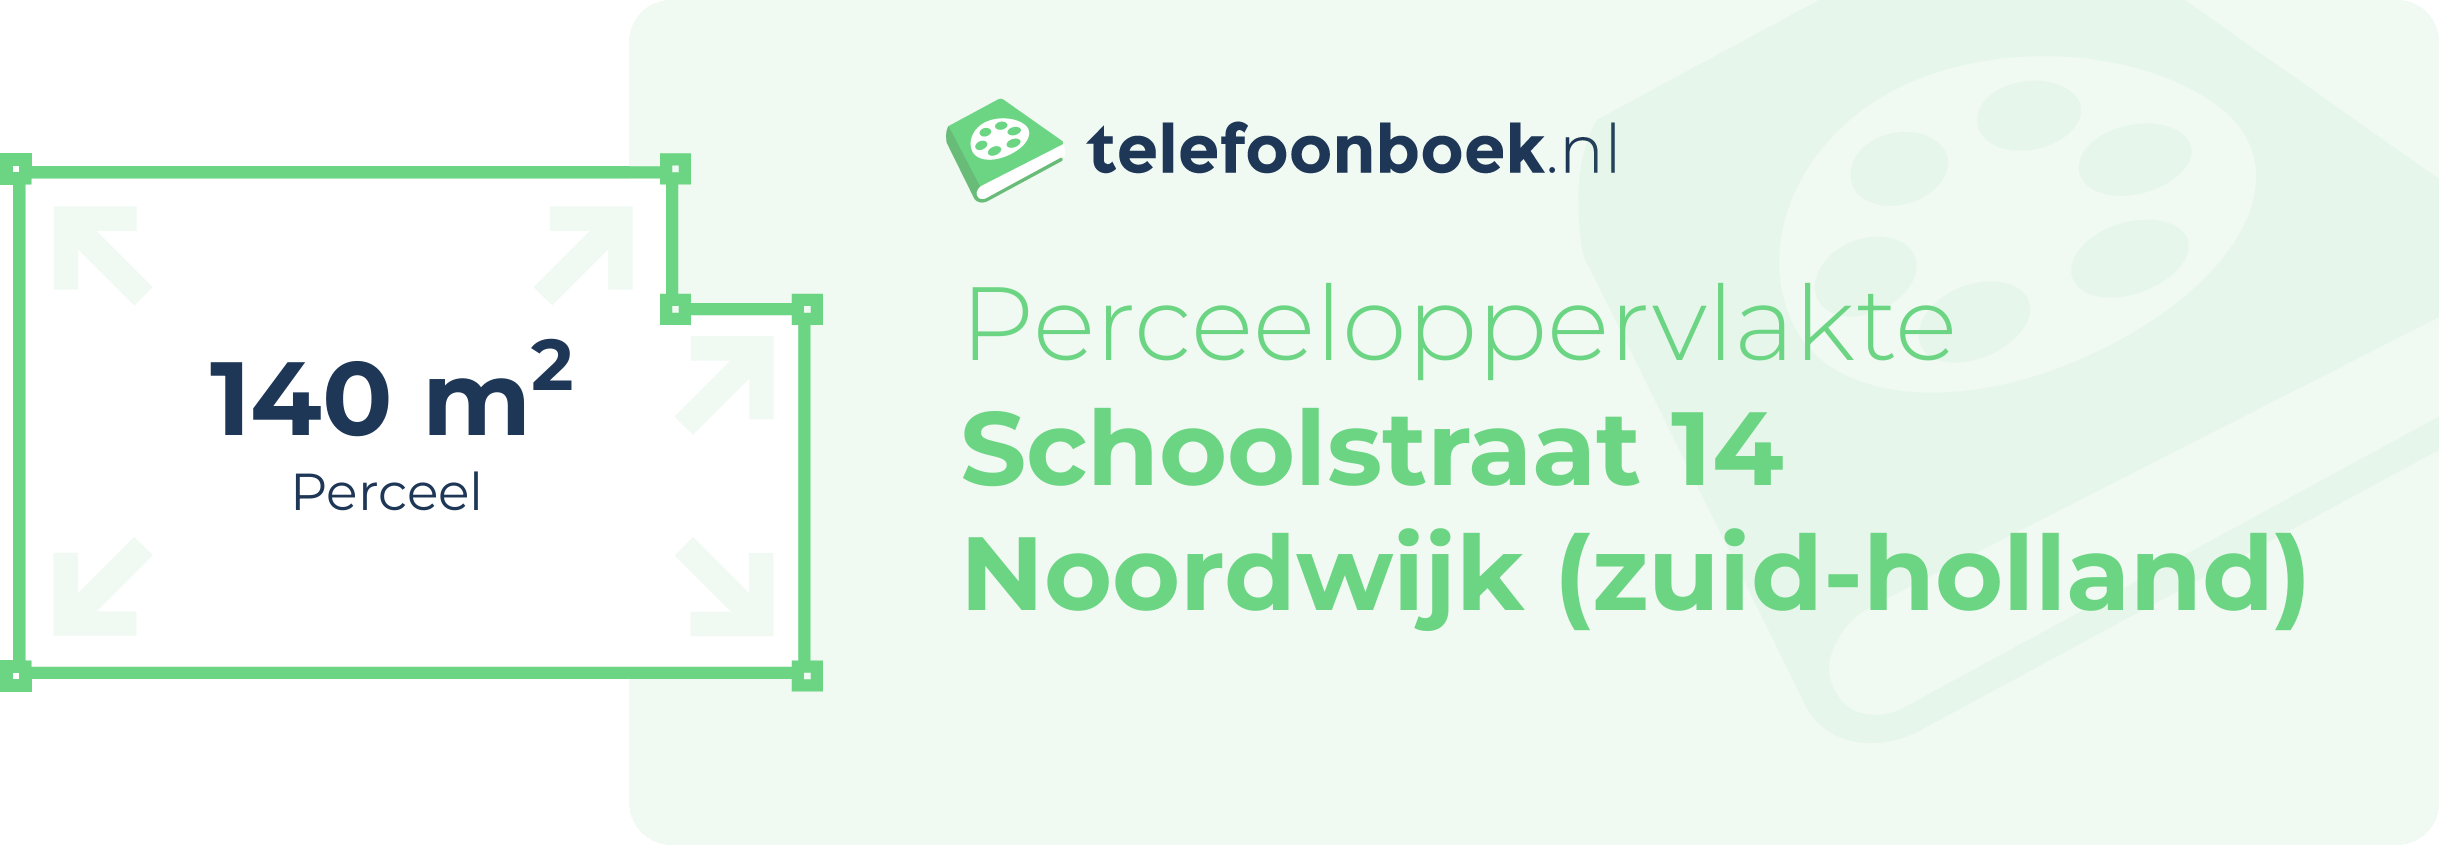 Perceeloppervlakte Schoolstraat 14 Noordwijk (Zuid-Holland)